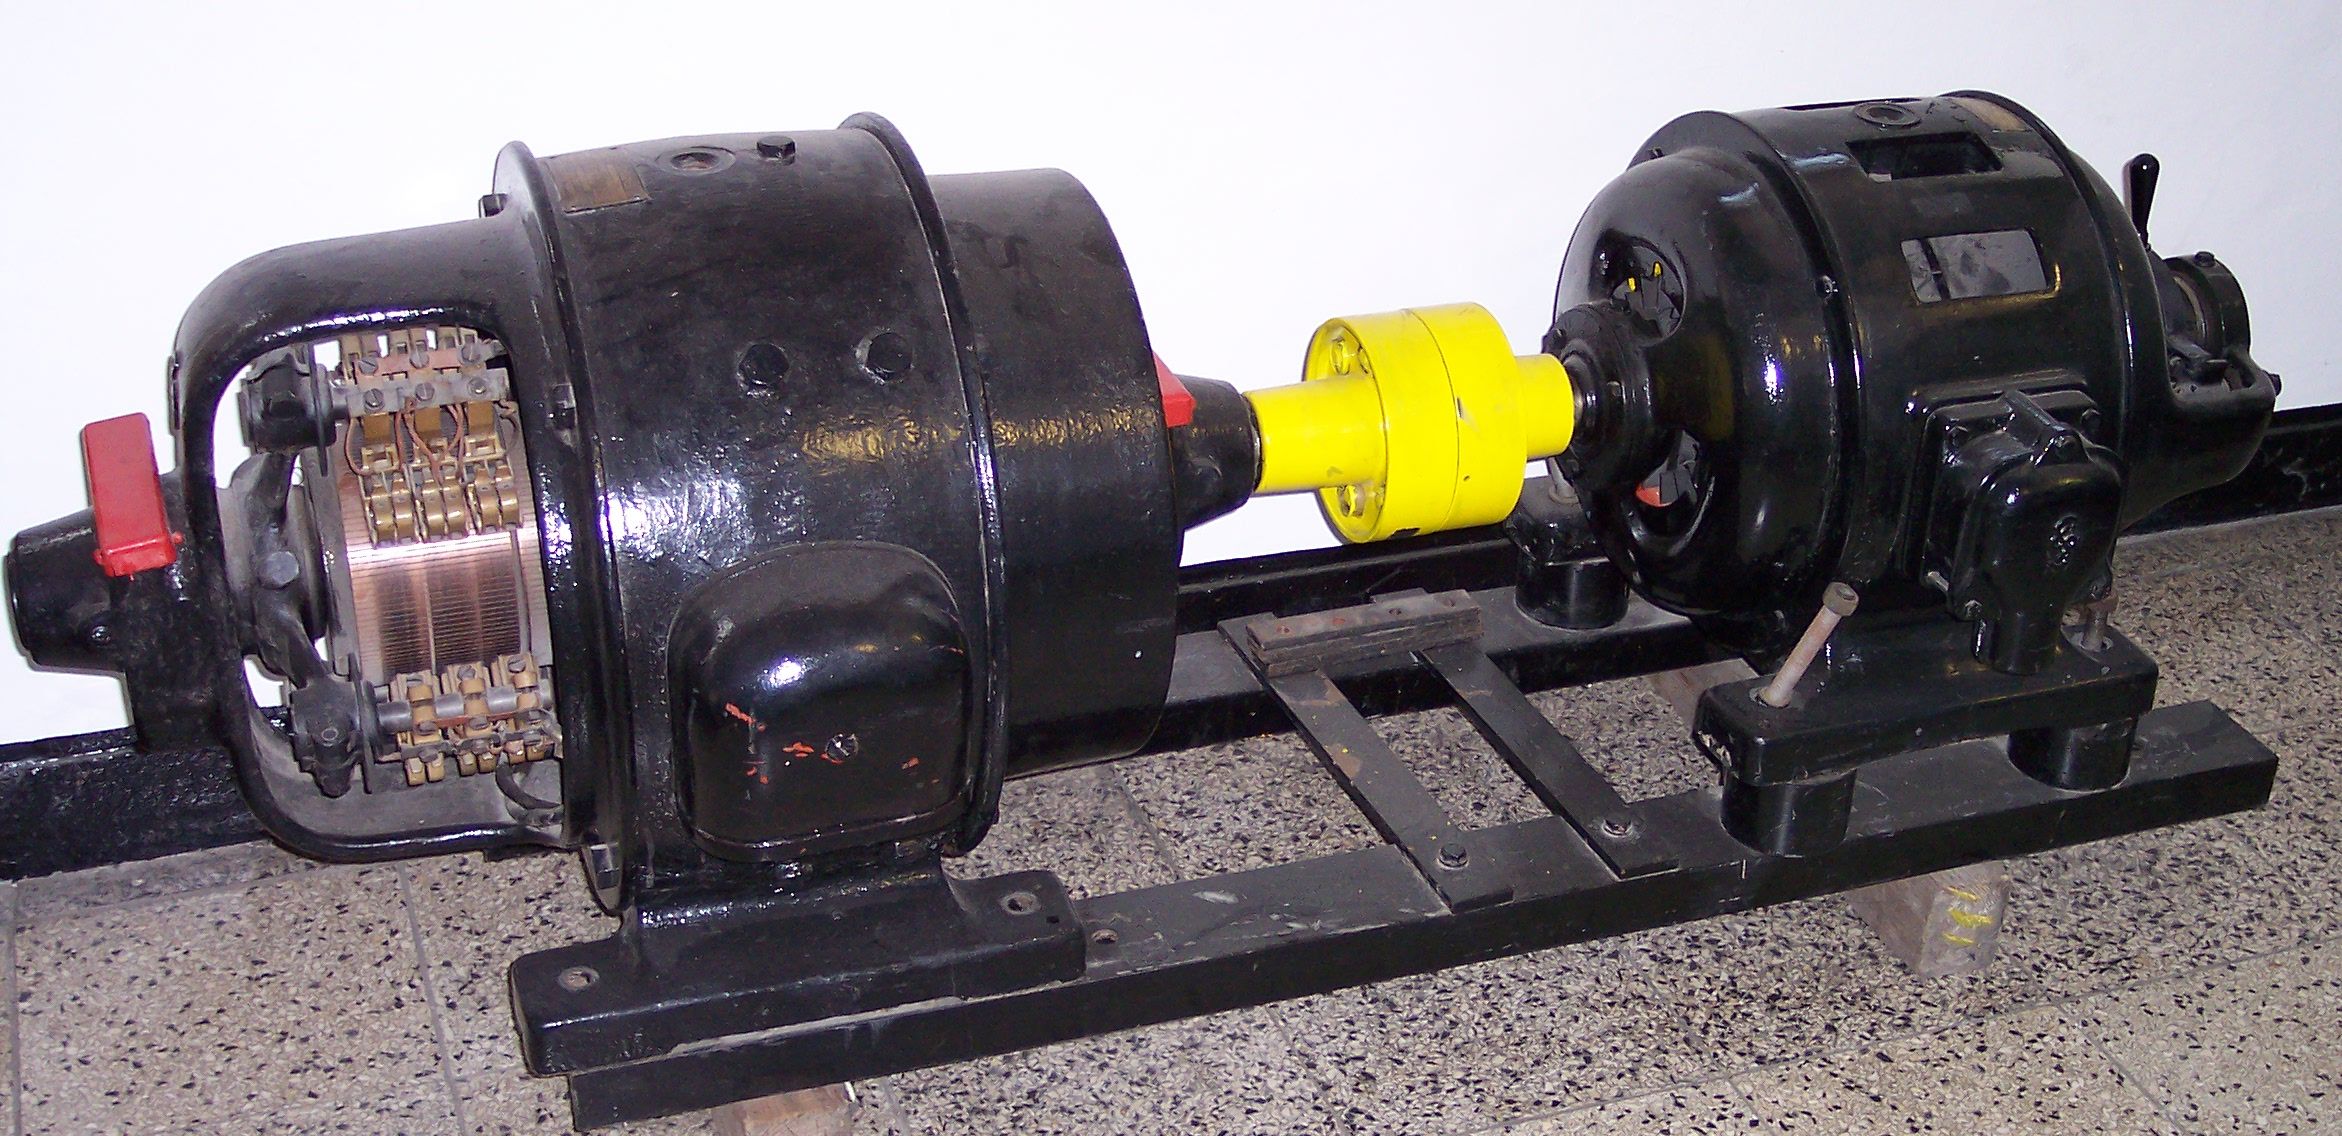 Motor-generátor je mechanický měnič napětí pro velmi vysoké výkony (zdroj obrázku Wikipedia).